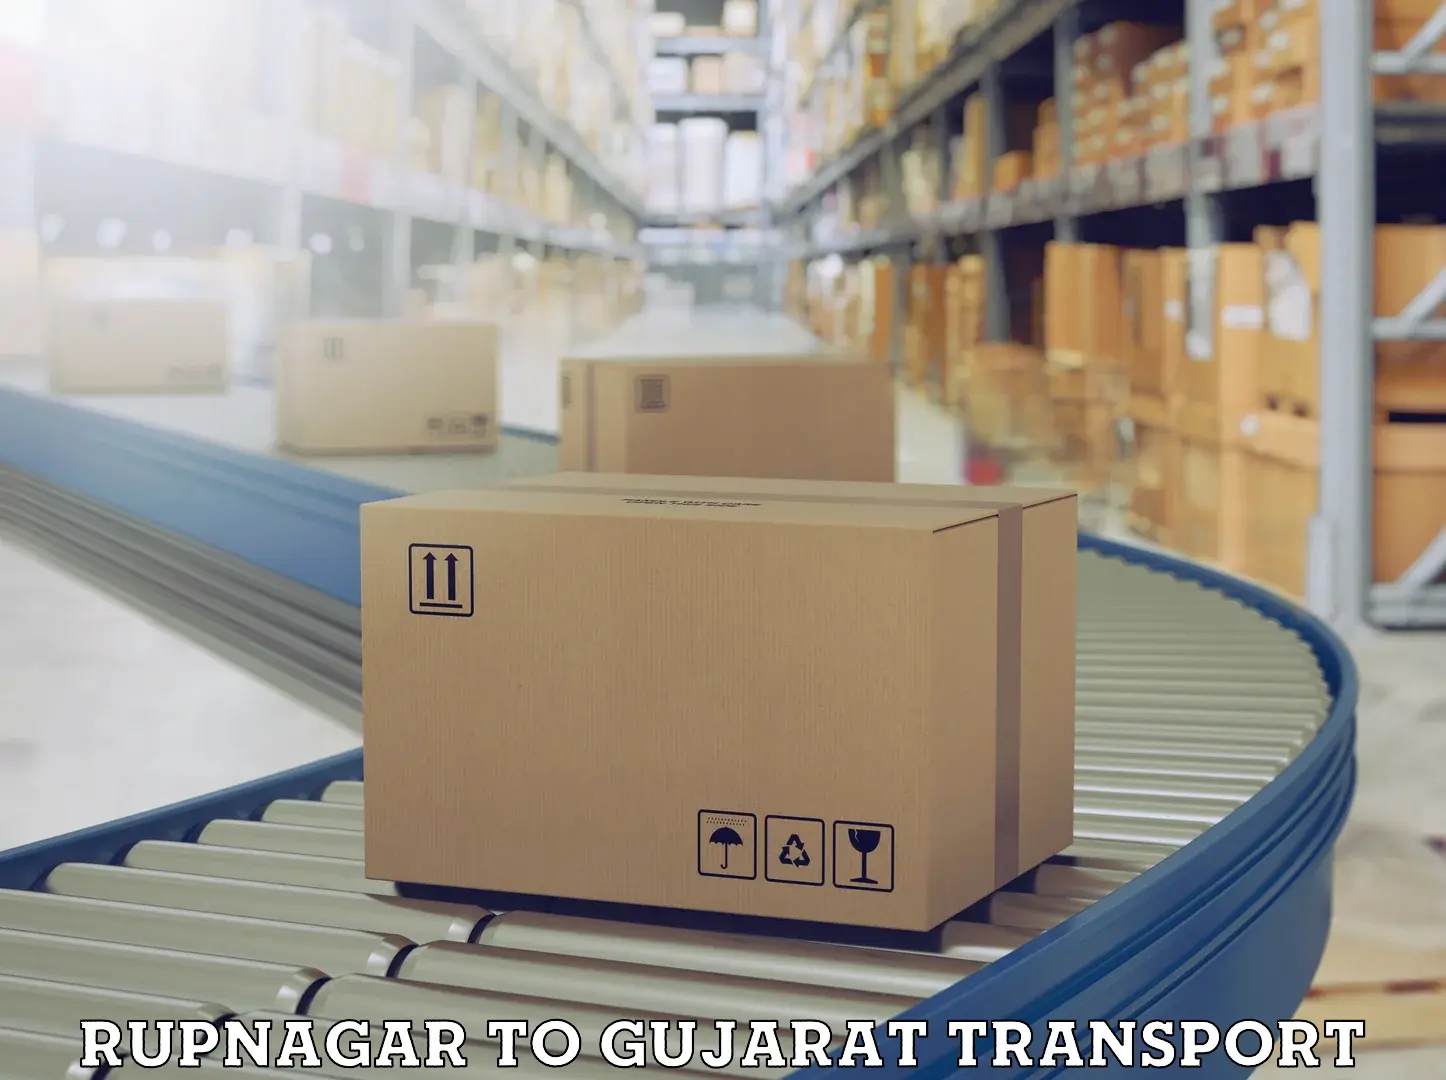 International cargo transportation services Rupnagar to Himatnagar